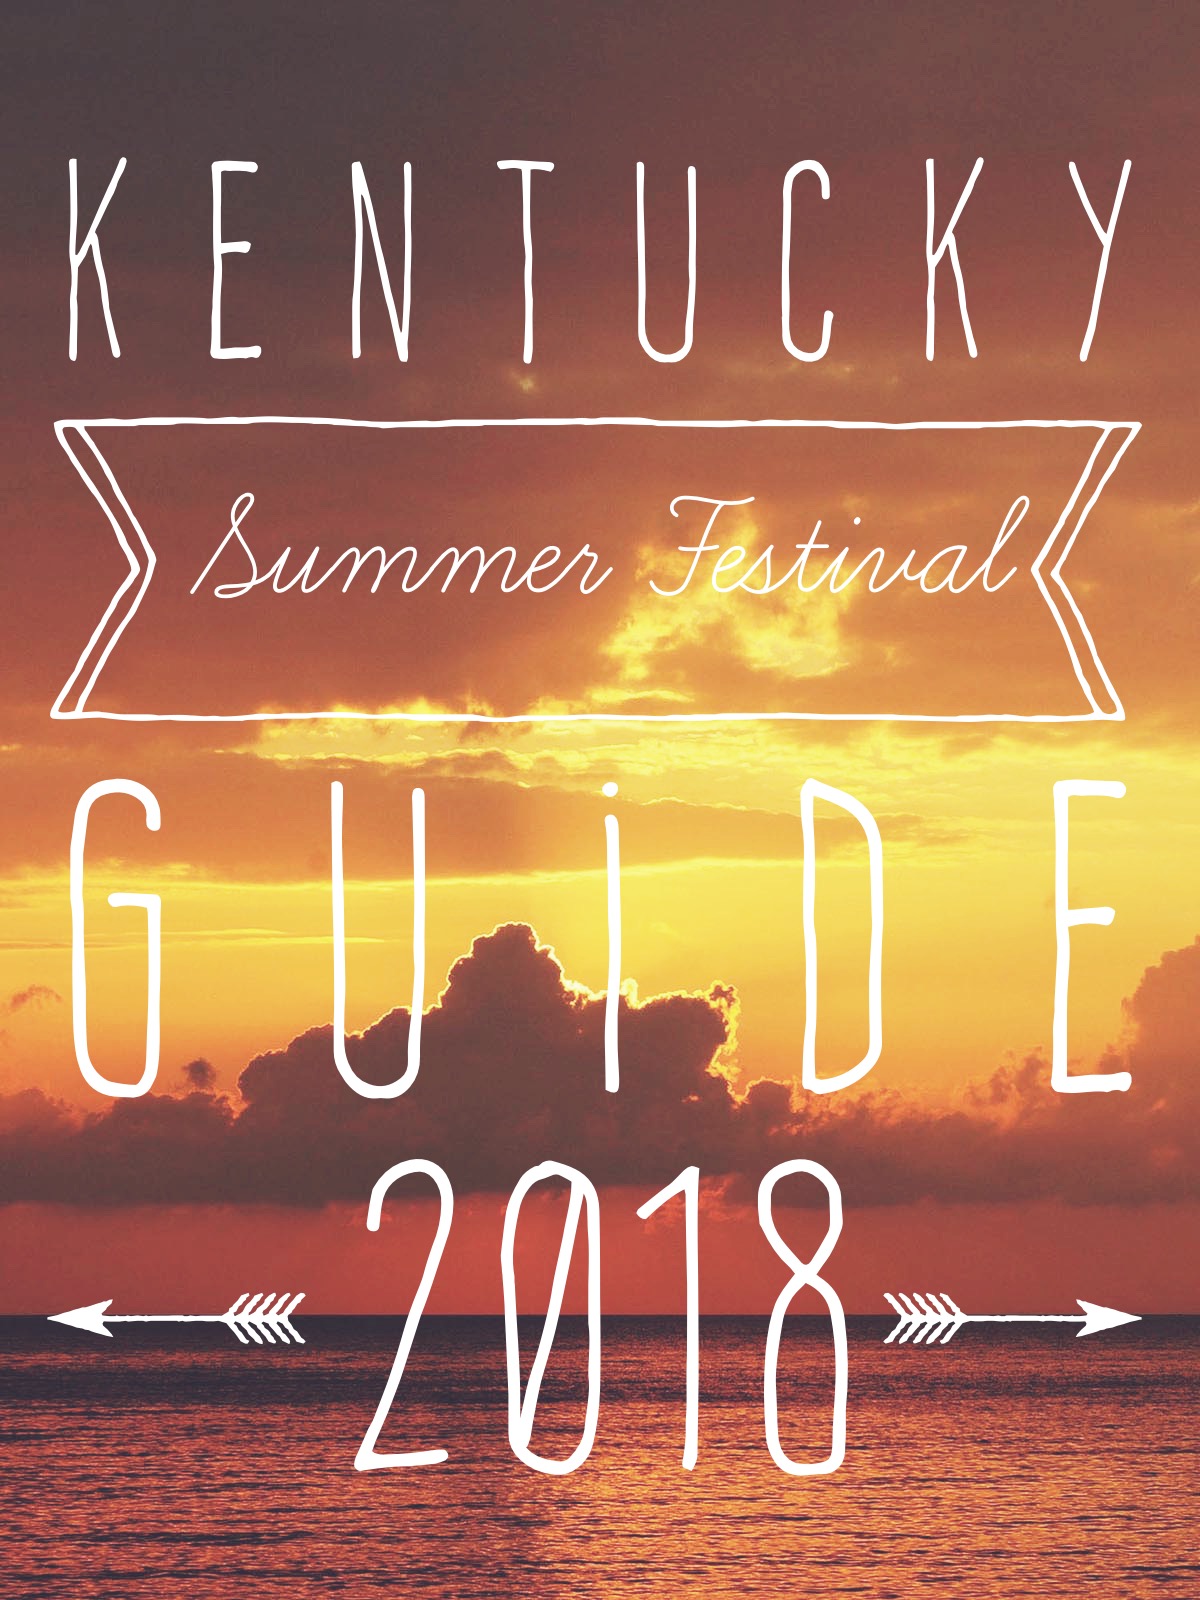 Summer Festival Guide 2018